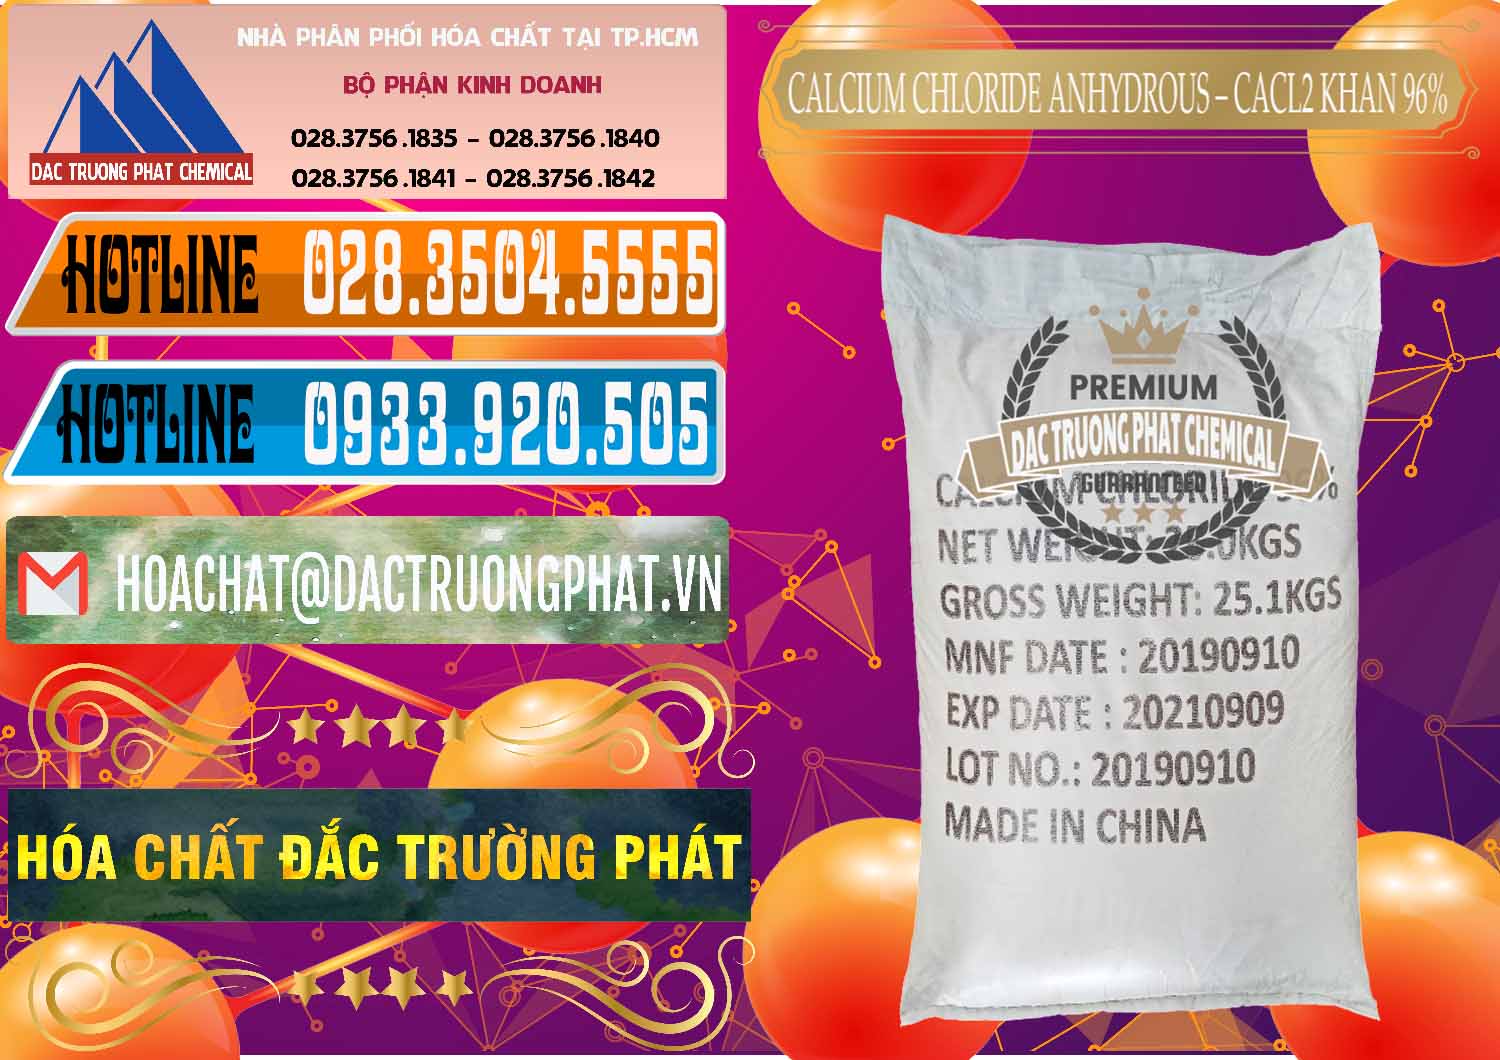 Đơn vị chuyên cung cấp và bán CaCl2 – Canxi Clorua Anhydrous Khan 96% Trung Quốc China - 0043 - Đơn vị phân phối - cung cấp hóa chất tại TP.HCM - stmp.net